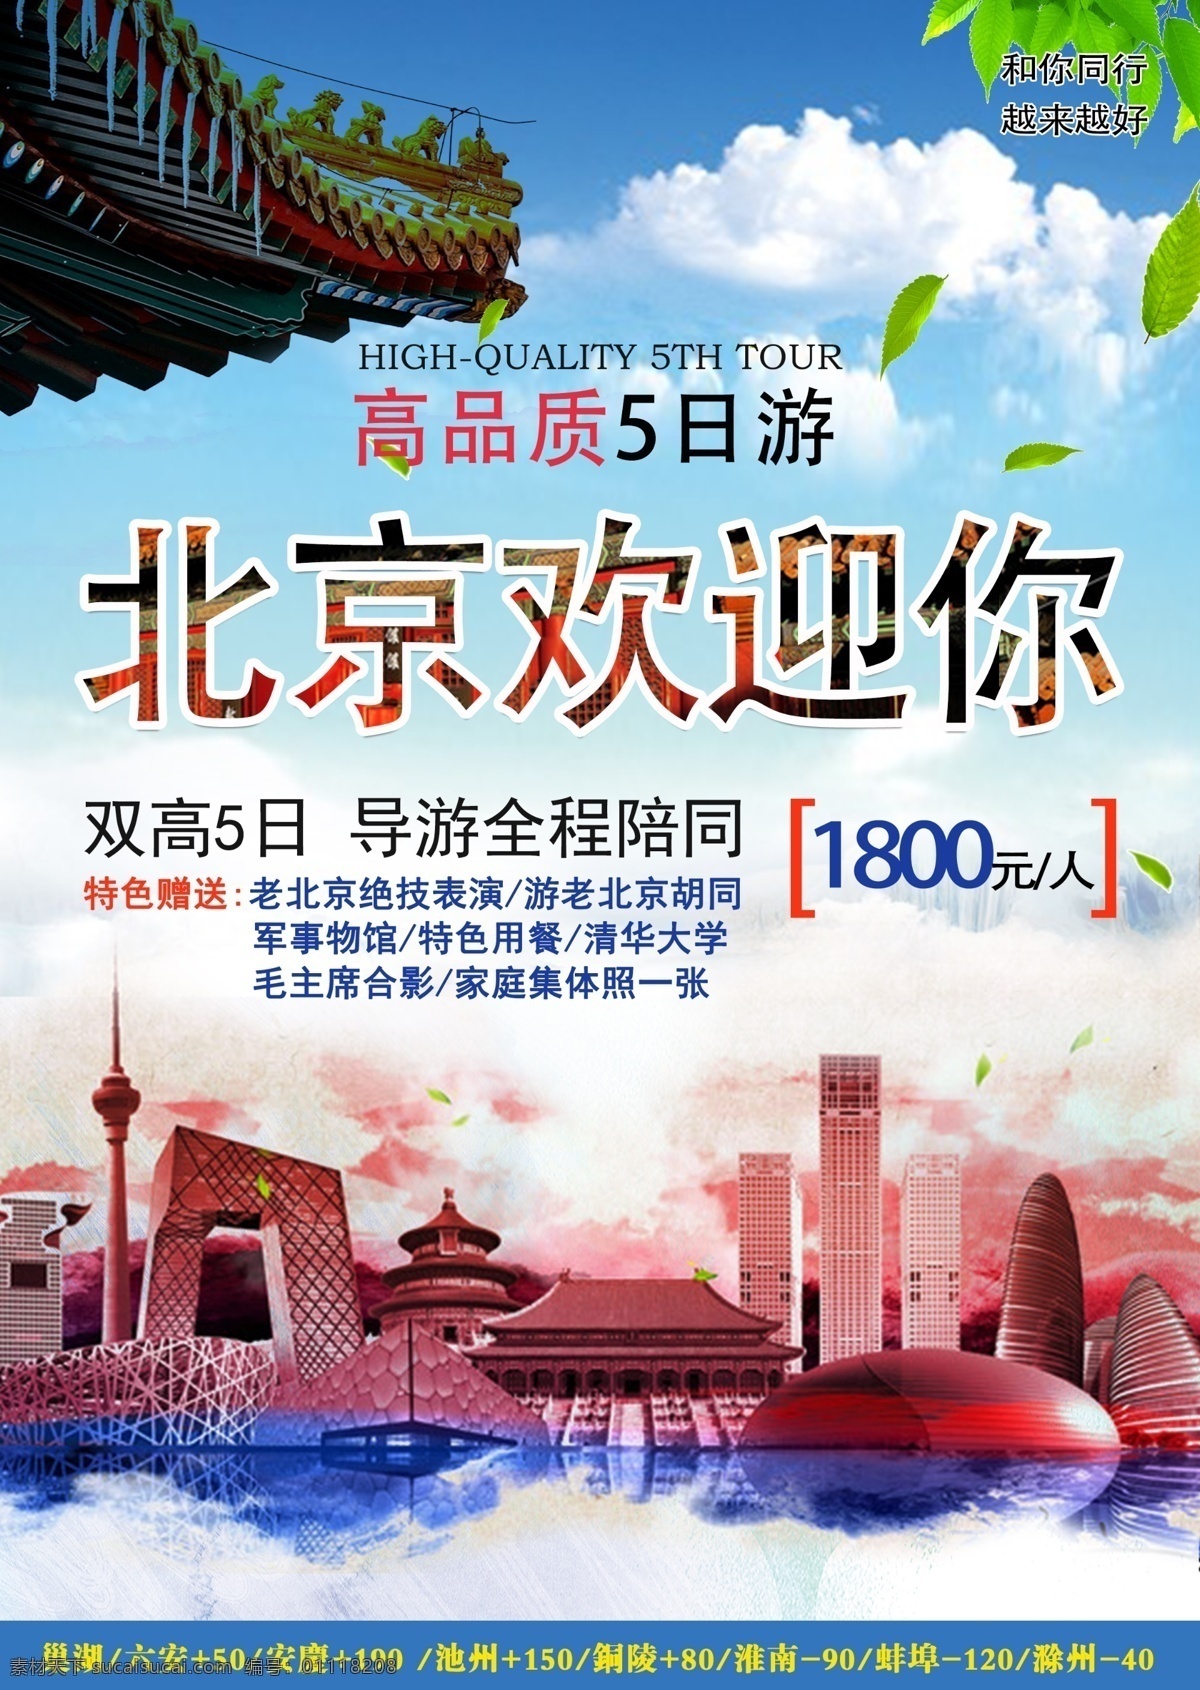 北京 旅游 宣传单 页 宣传单页 天安门 故宫 平面设计 微信海报 鸟巢